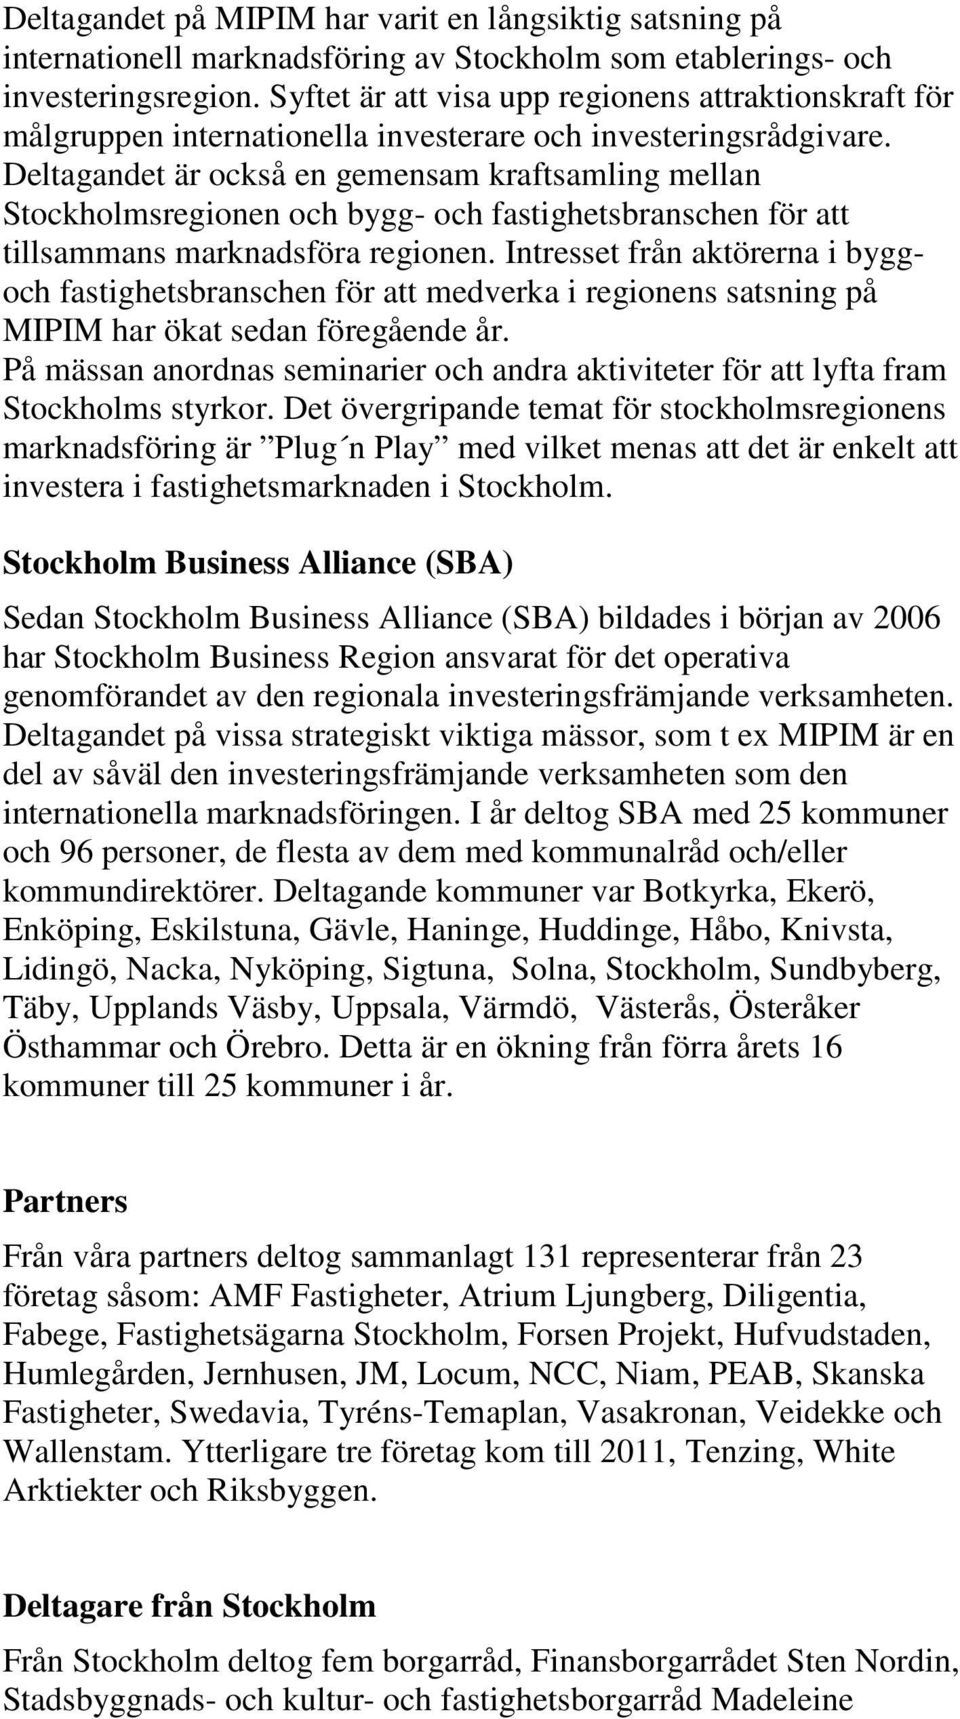 Deltagandet är också en gemensam kraftsamling mellan Stockholmsregionen och bygg- och fastighetsbranschen för att tillsammans marknadsföra regionen.